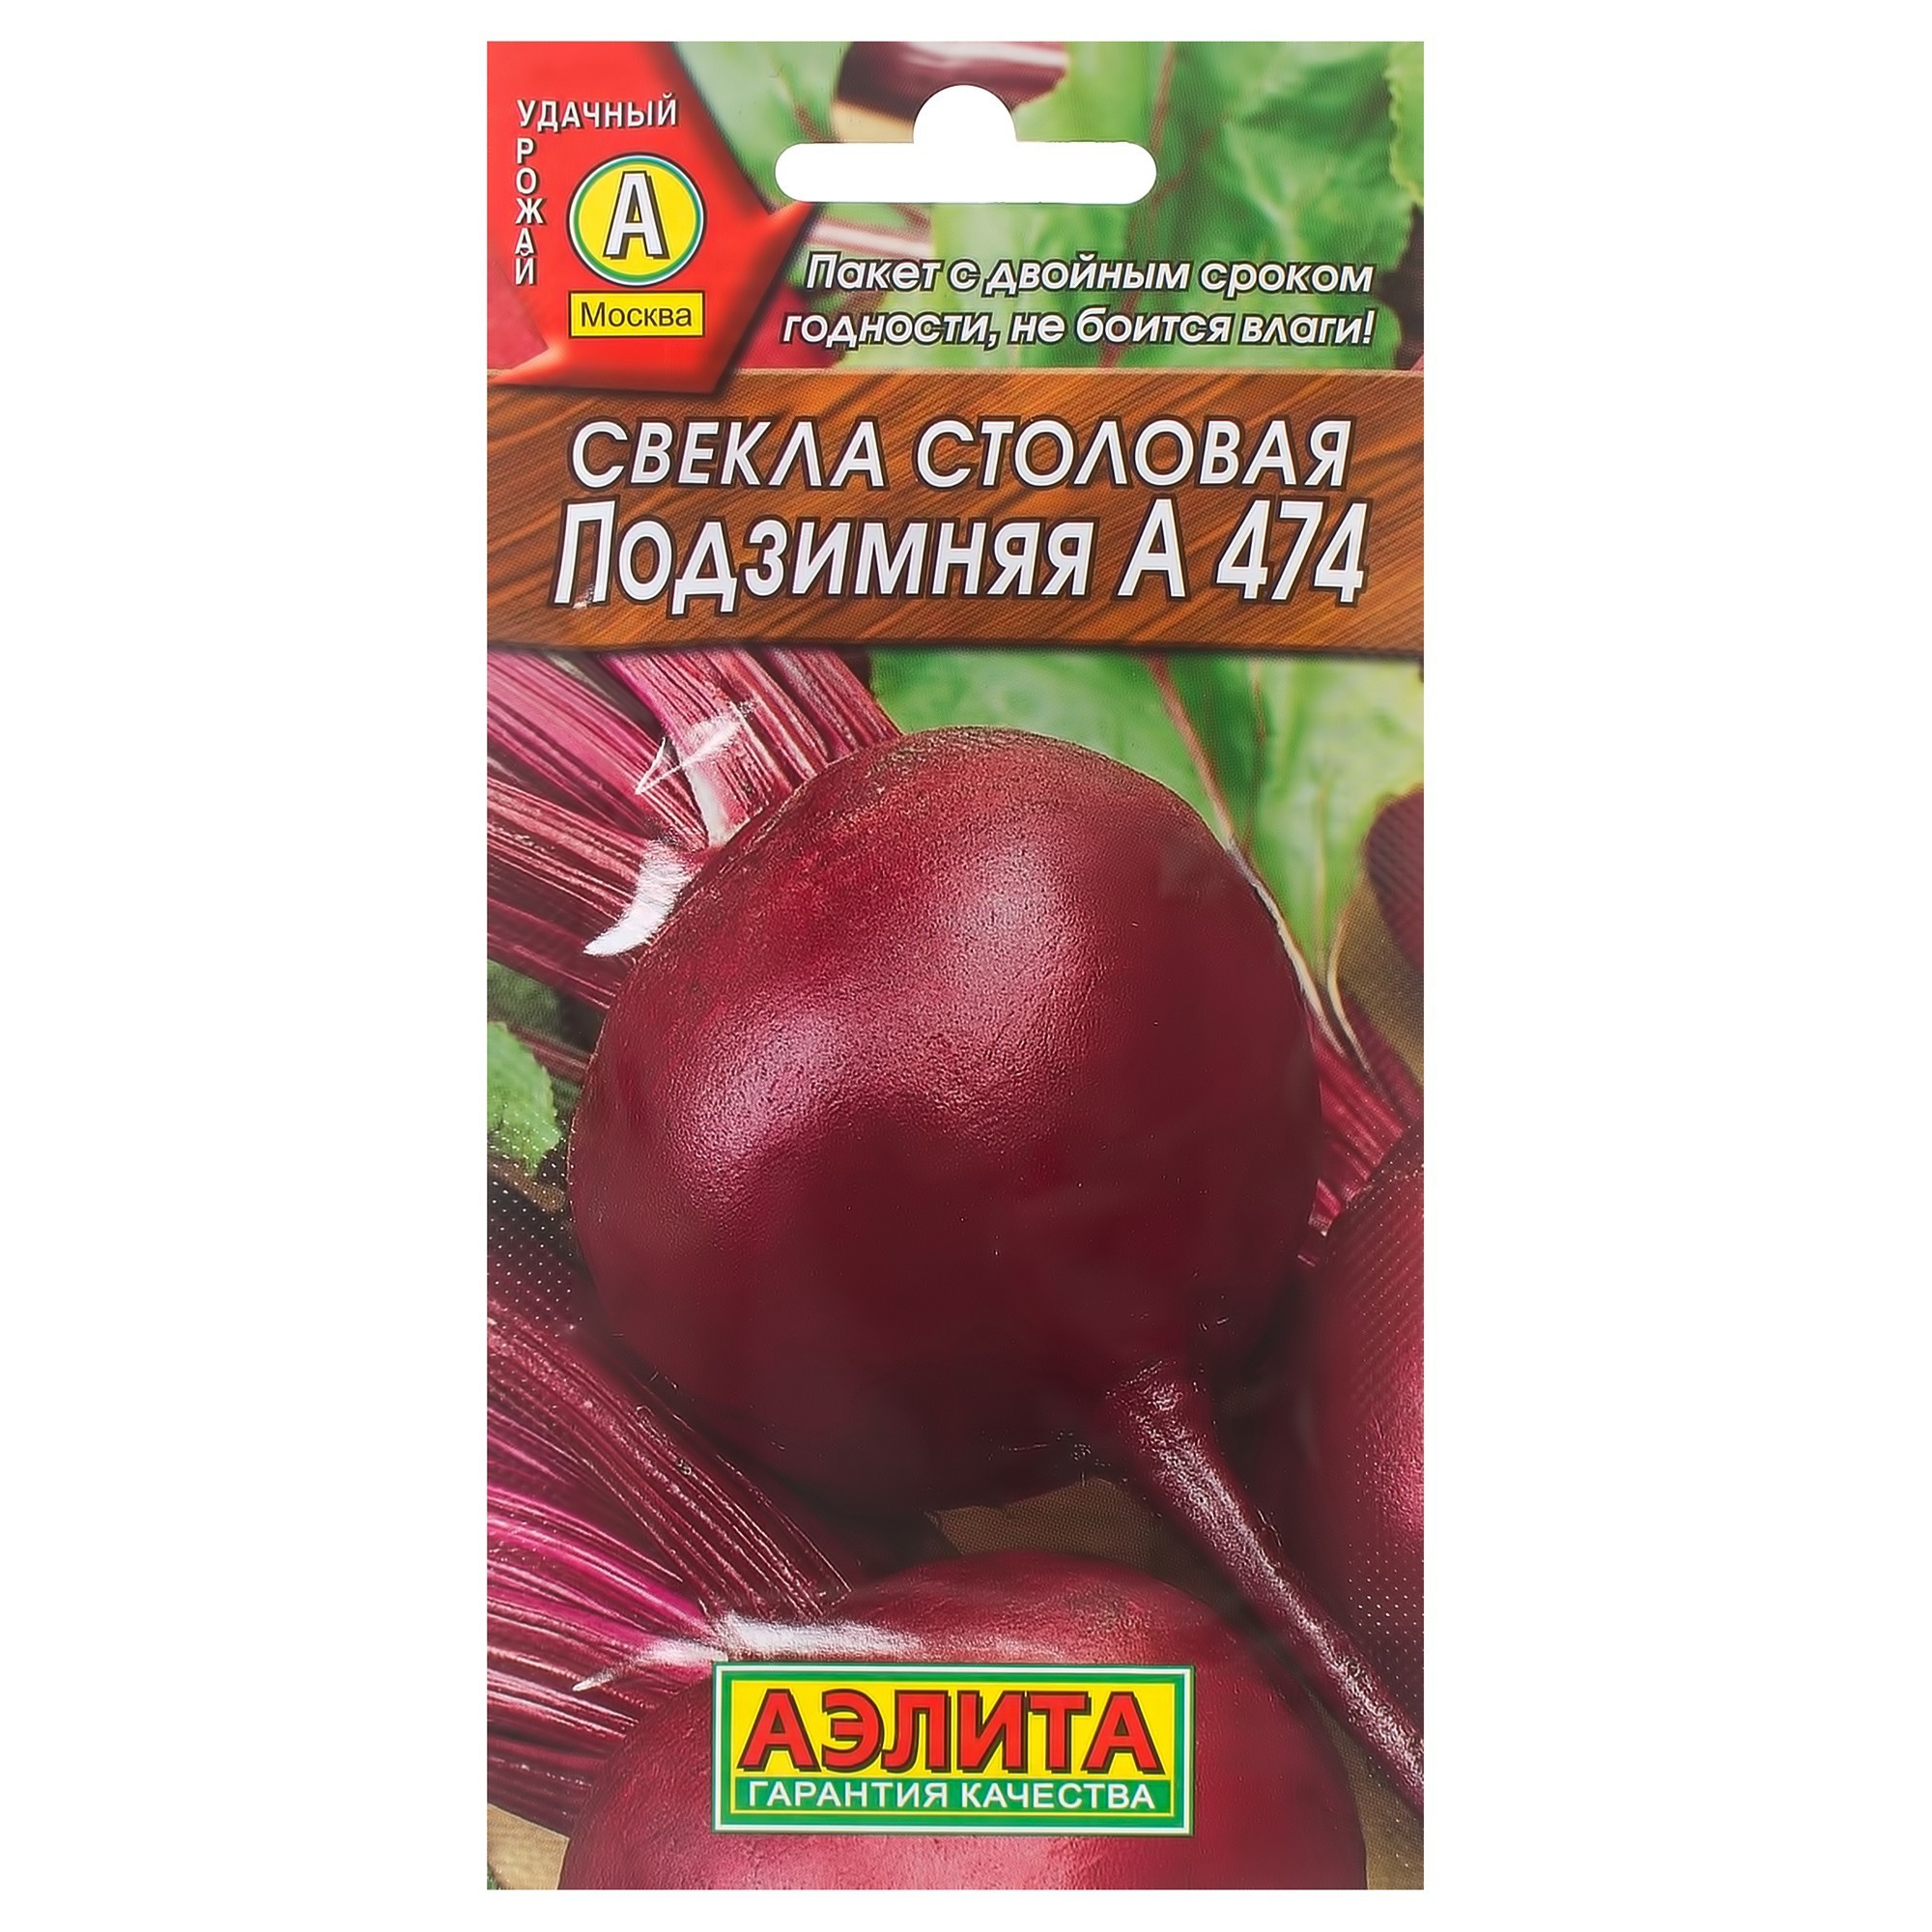 Семена Свёкла столовая «Подзимняя» А474 в Хабаровске – купить по низкойцене в интернет-магазине Леруа Мерлен